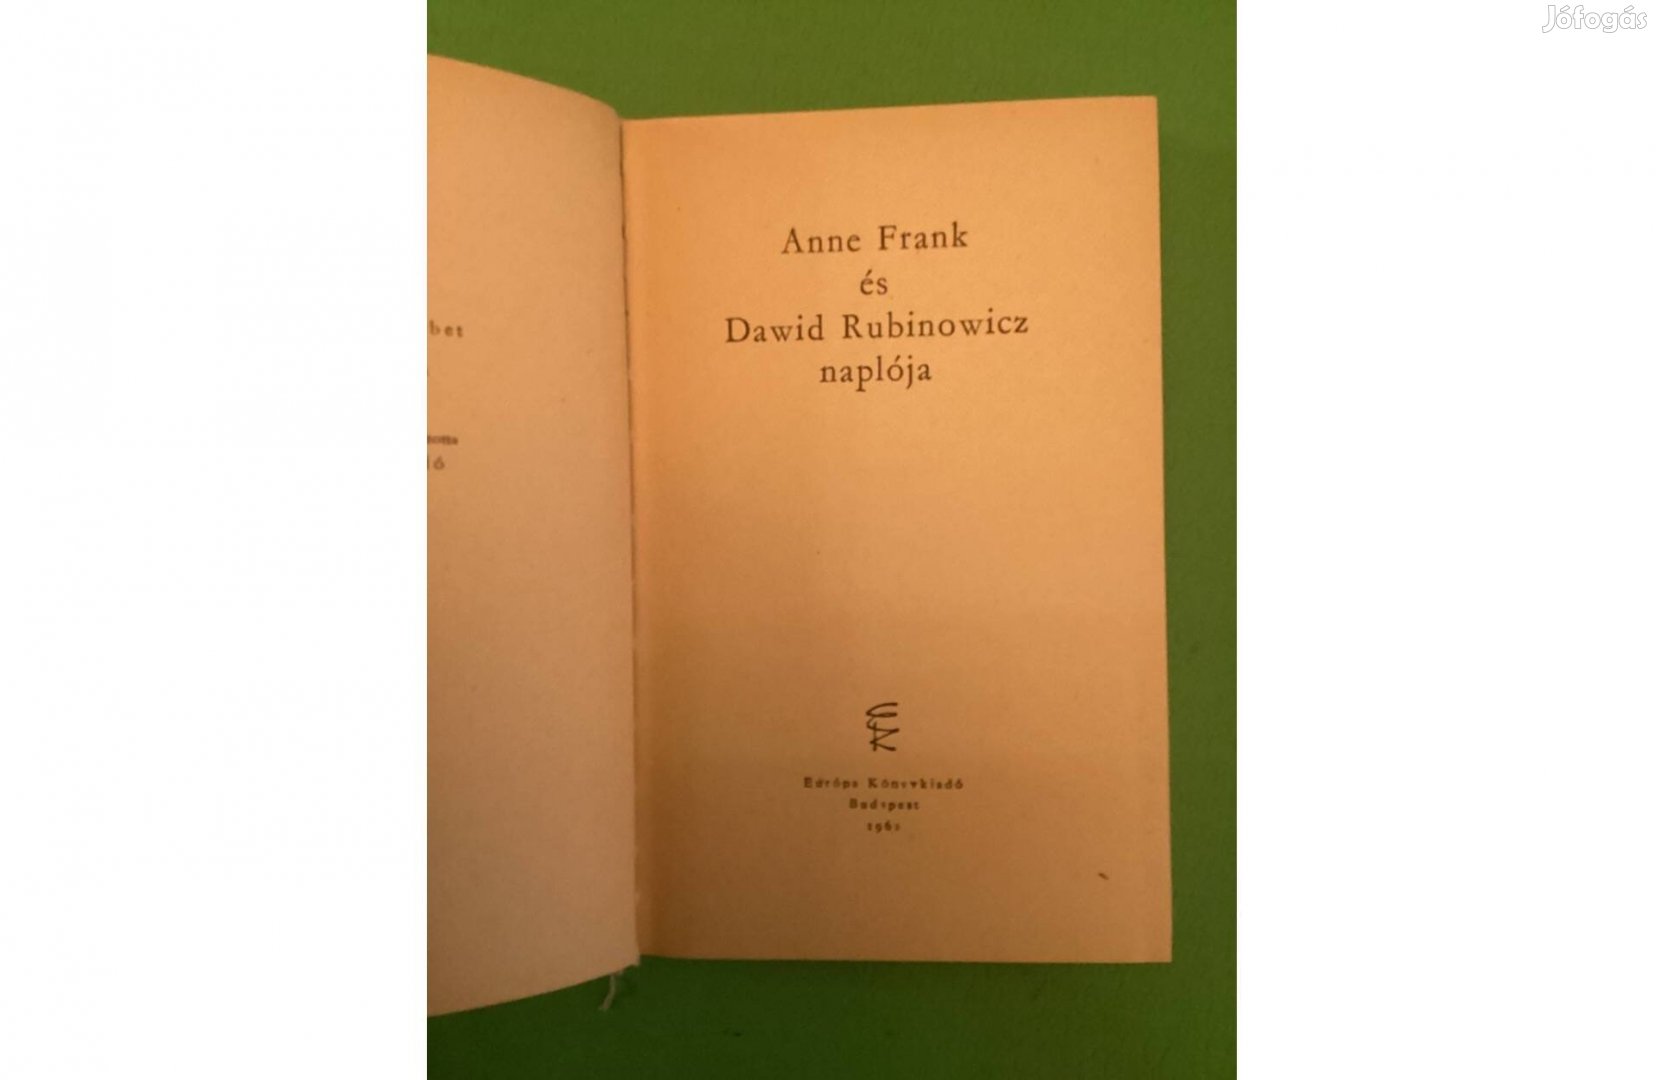 Anne Frank naplója, könyv